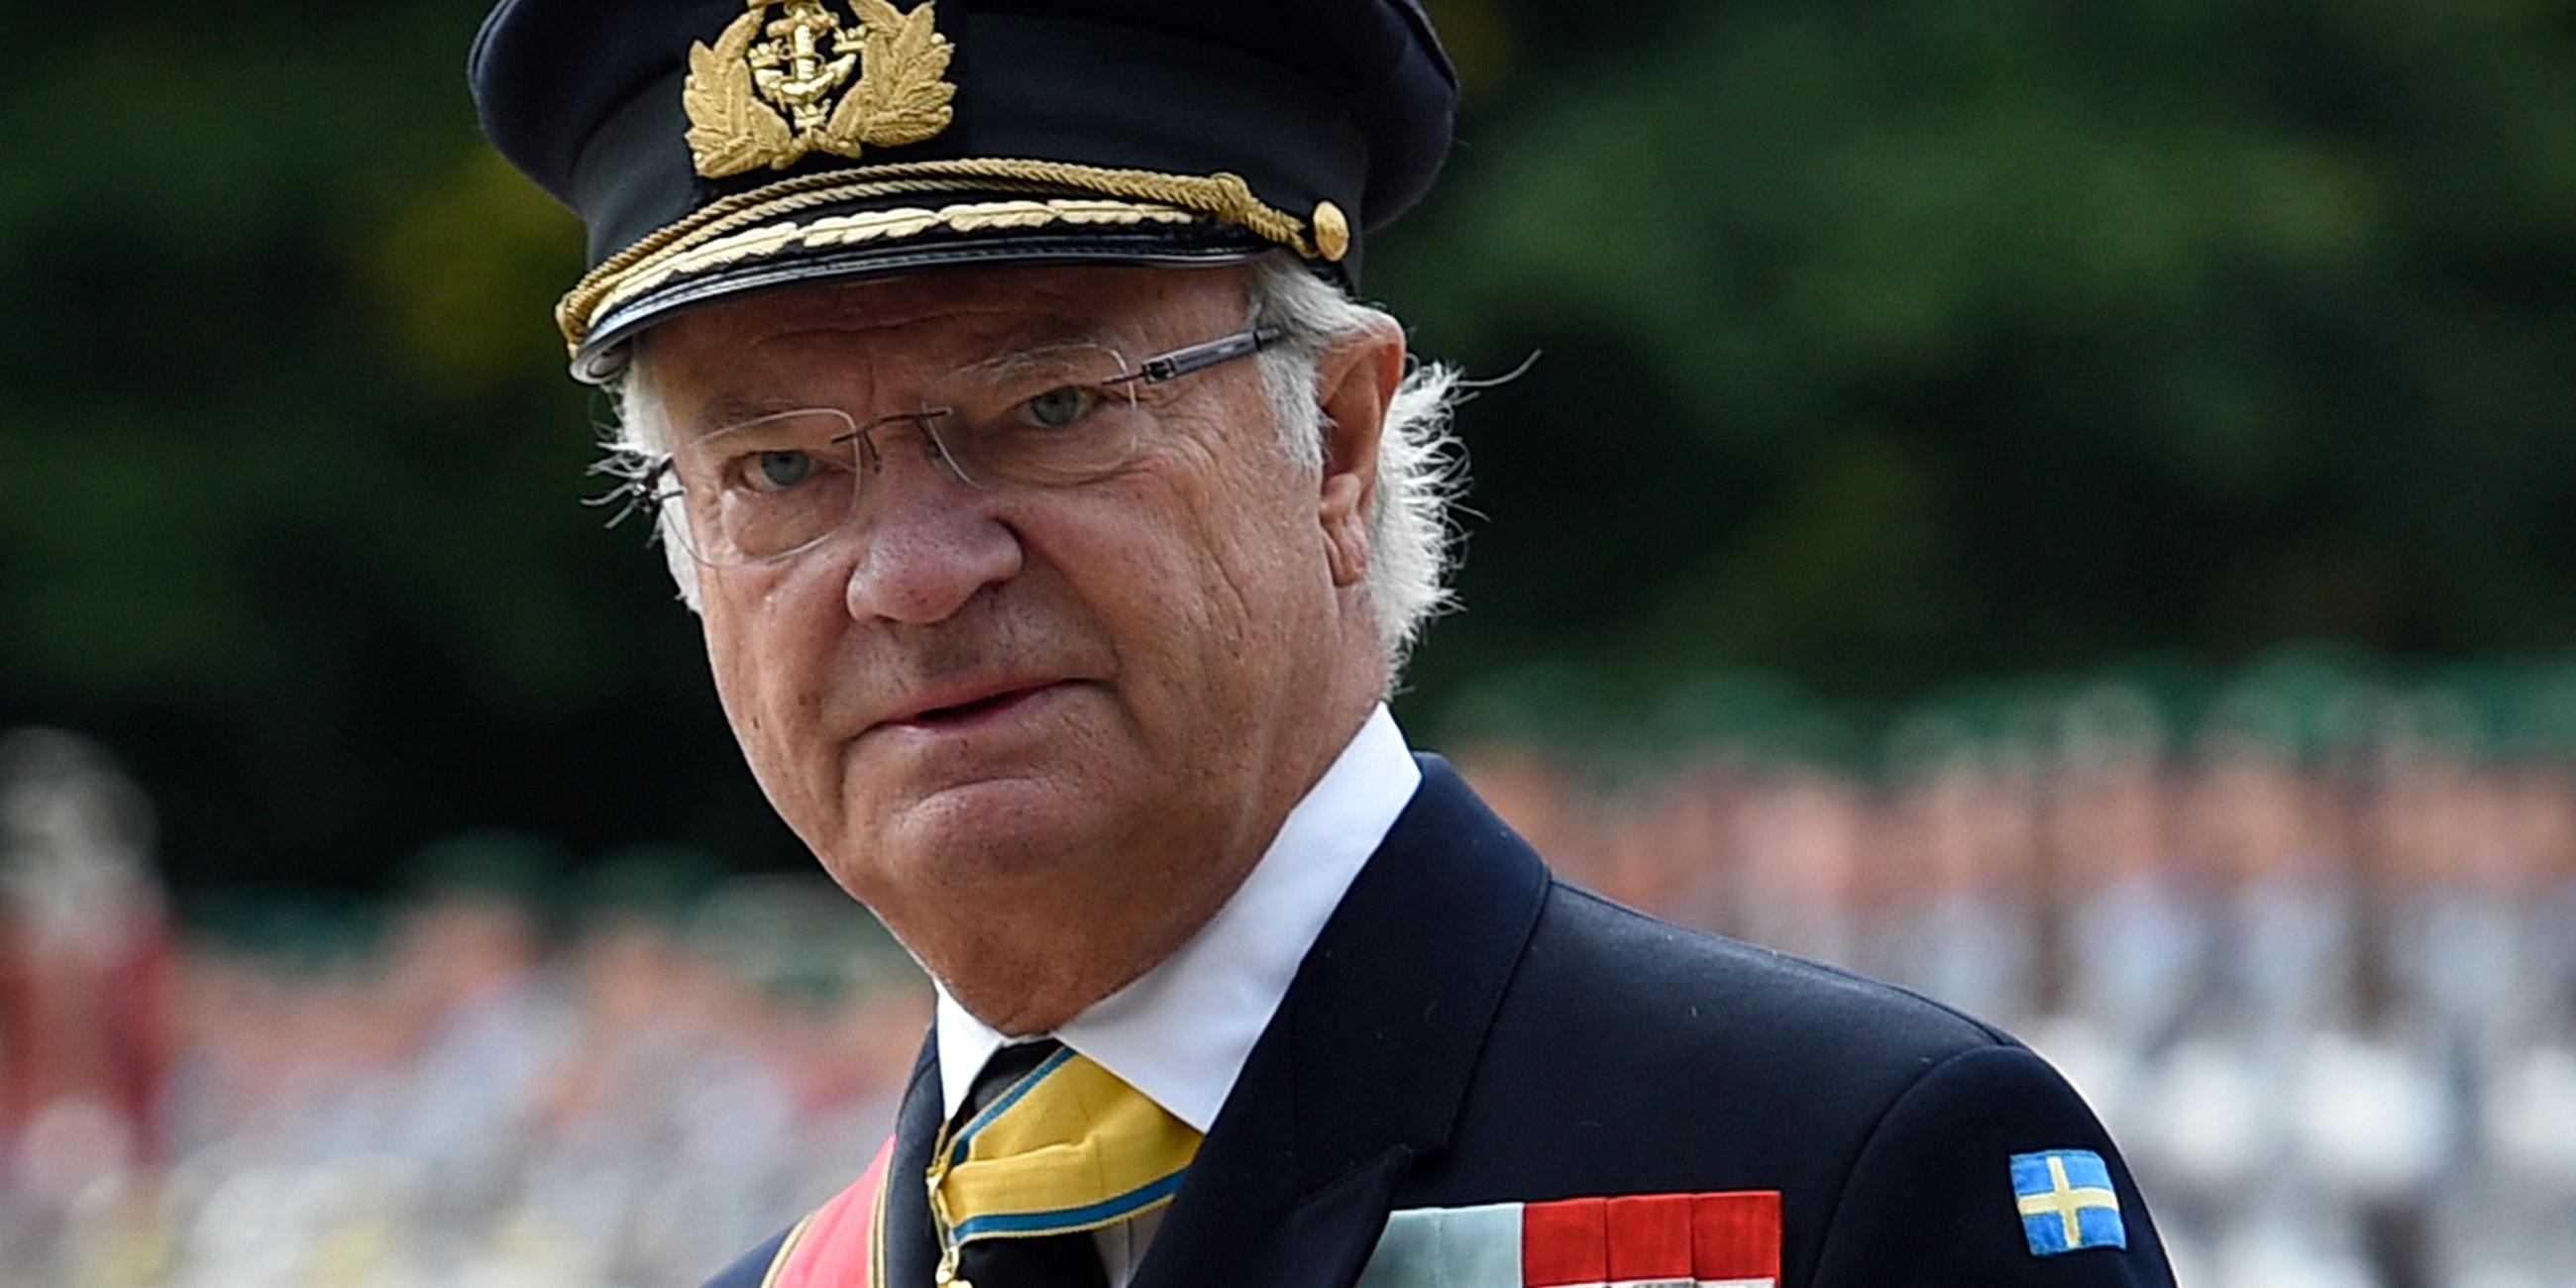 Carl XVI. Gustaf ist der am längsten regierende König Schwedens.